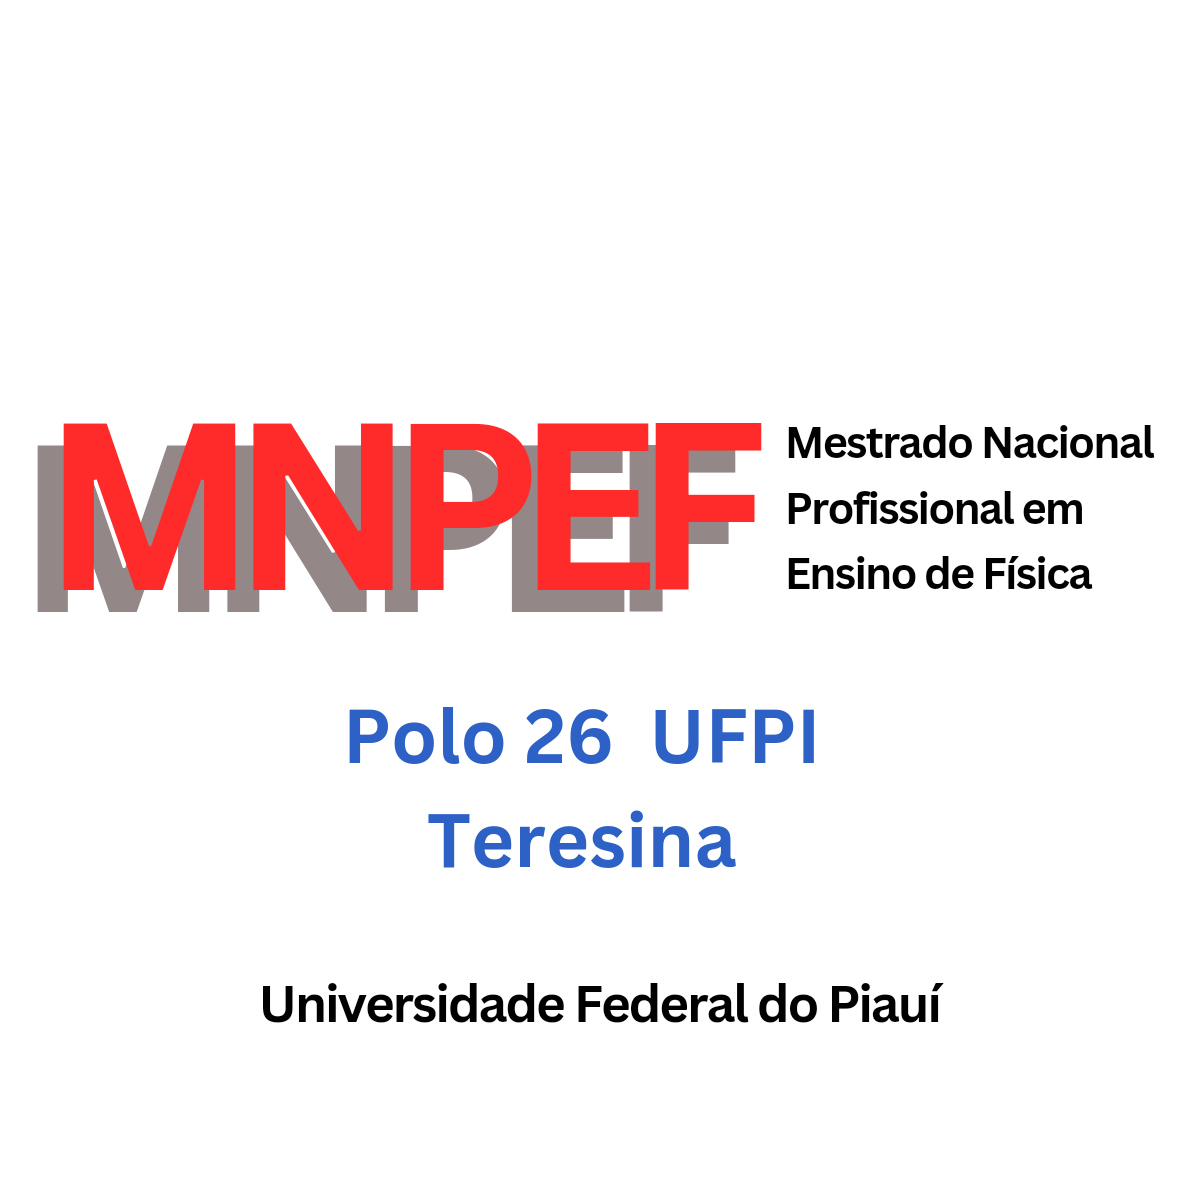 MNPEF_logo.png